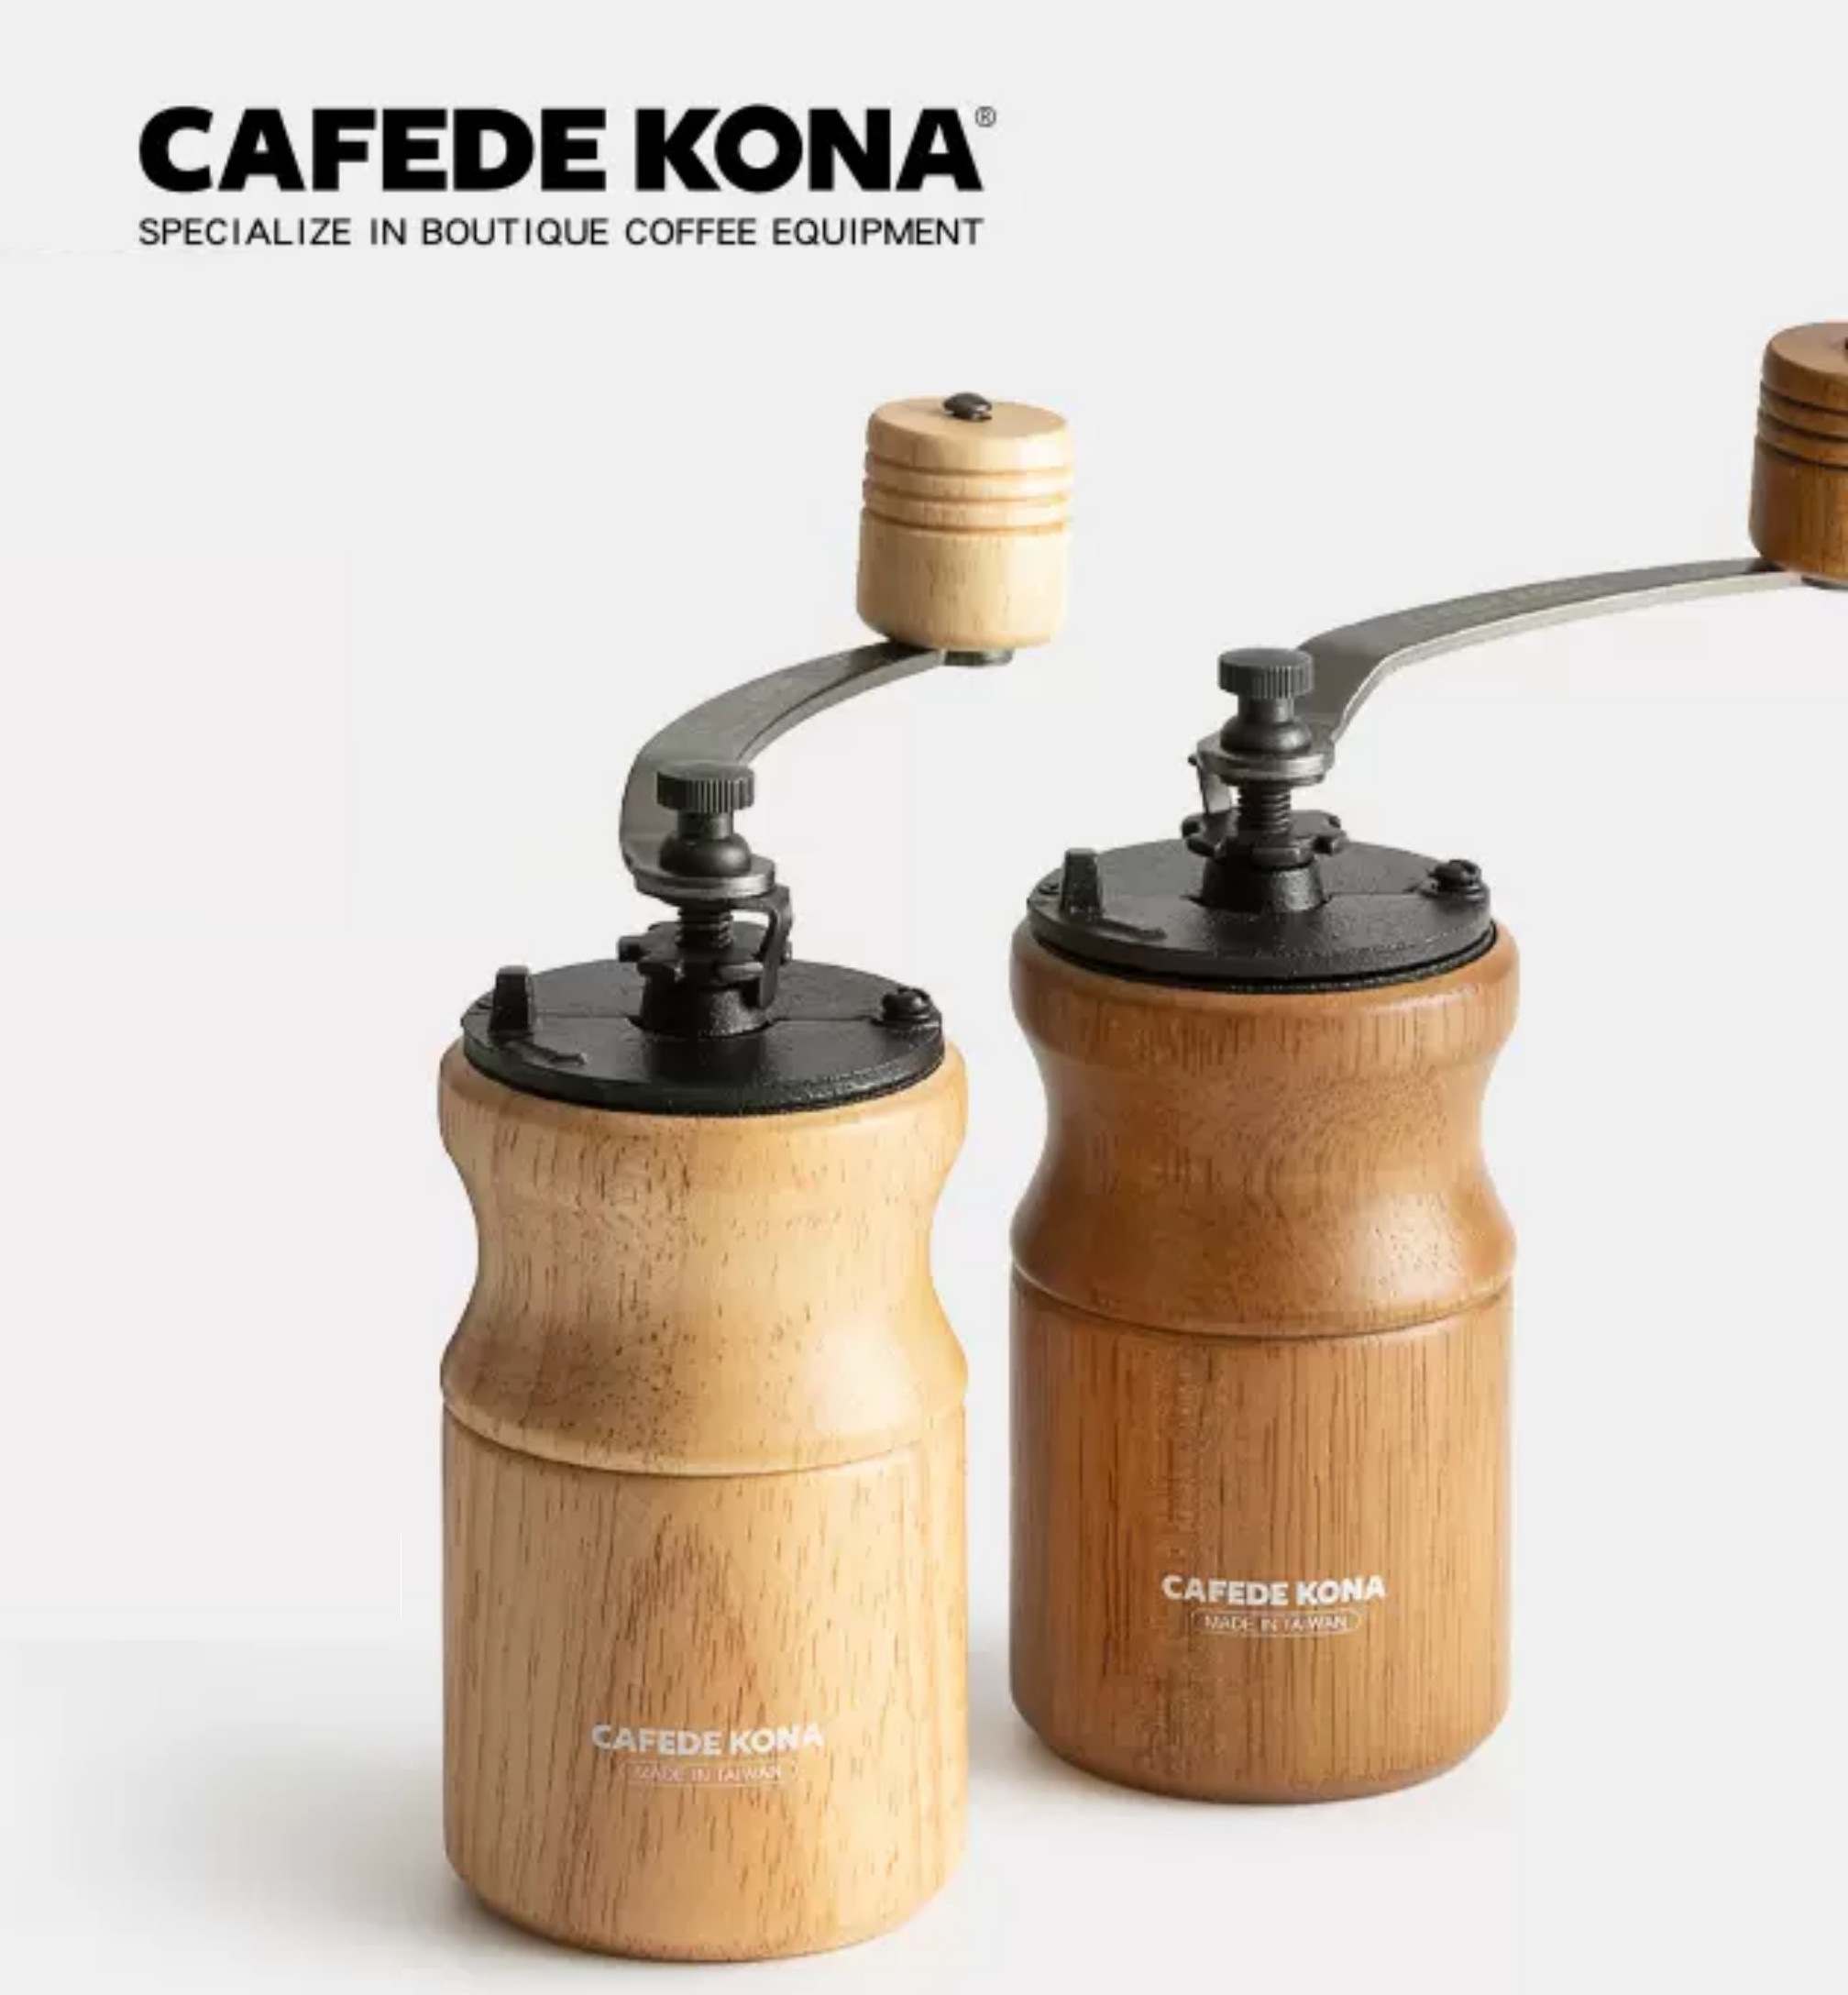 Cối xay cà phê thân gỗ lưỡi thép CAFE DE KONA